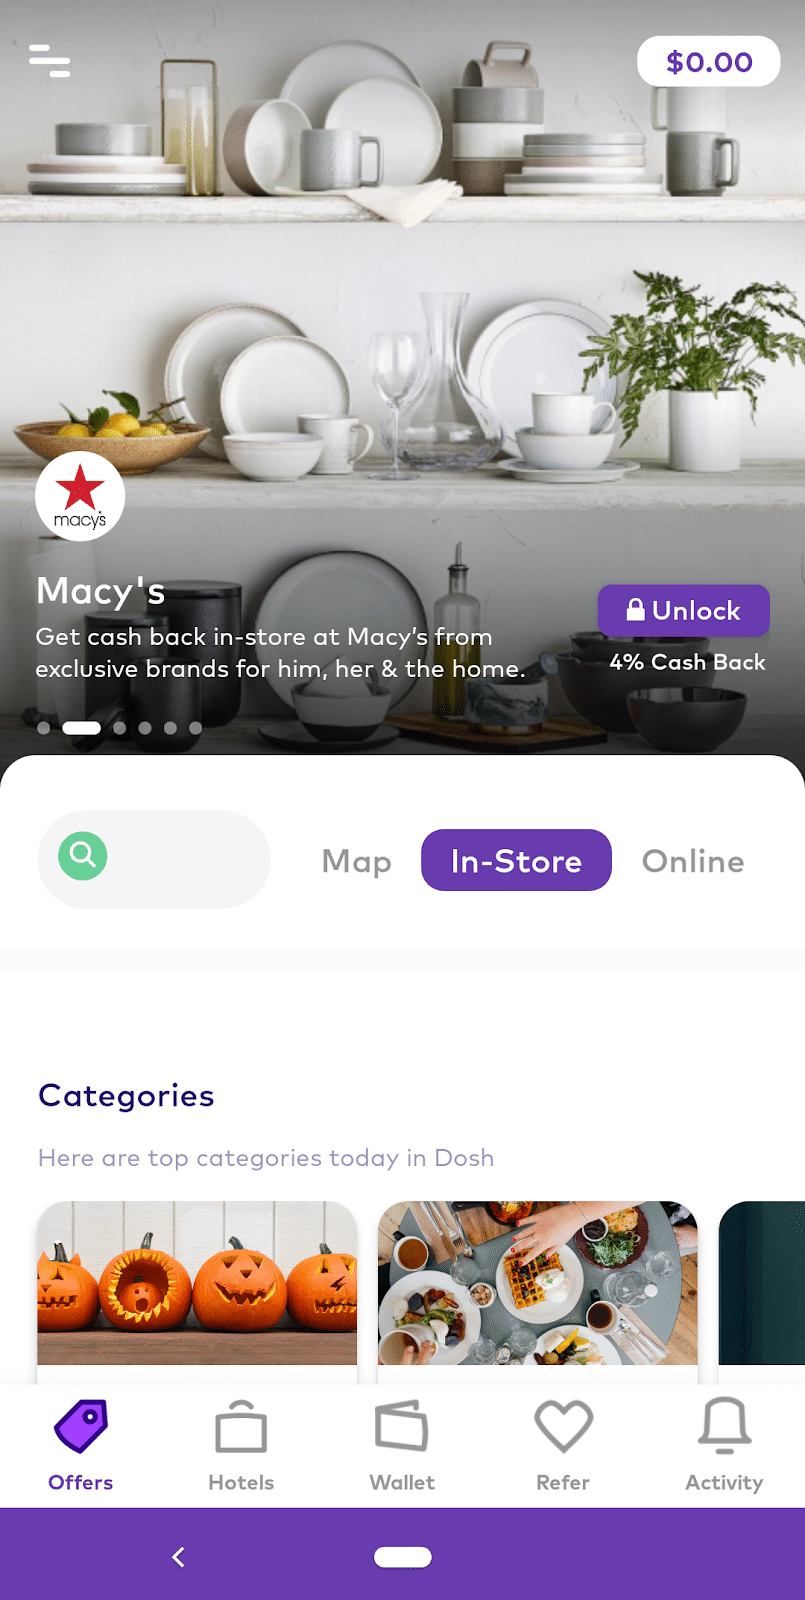 Captura de pantalla de la aplicación de platos de Macy's